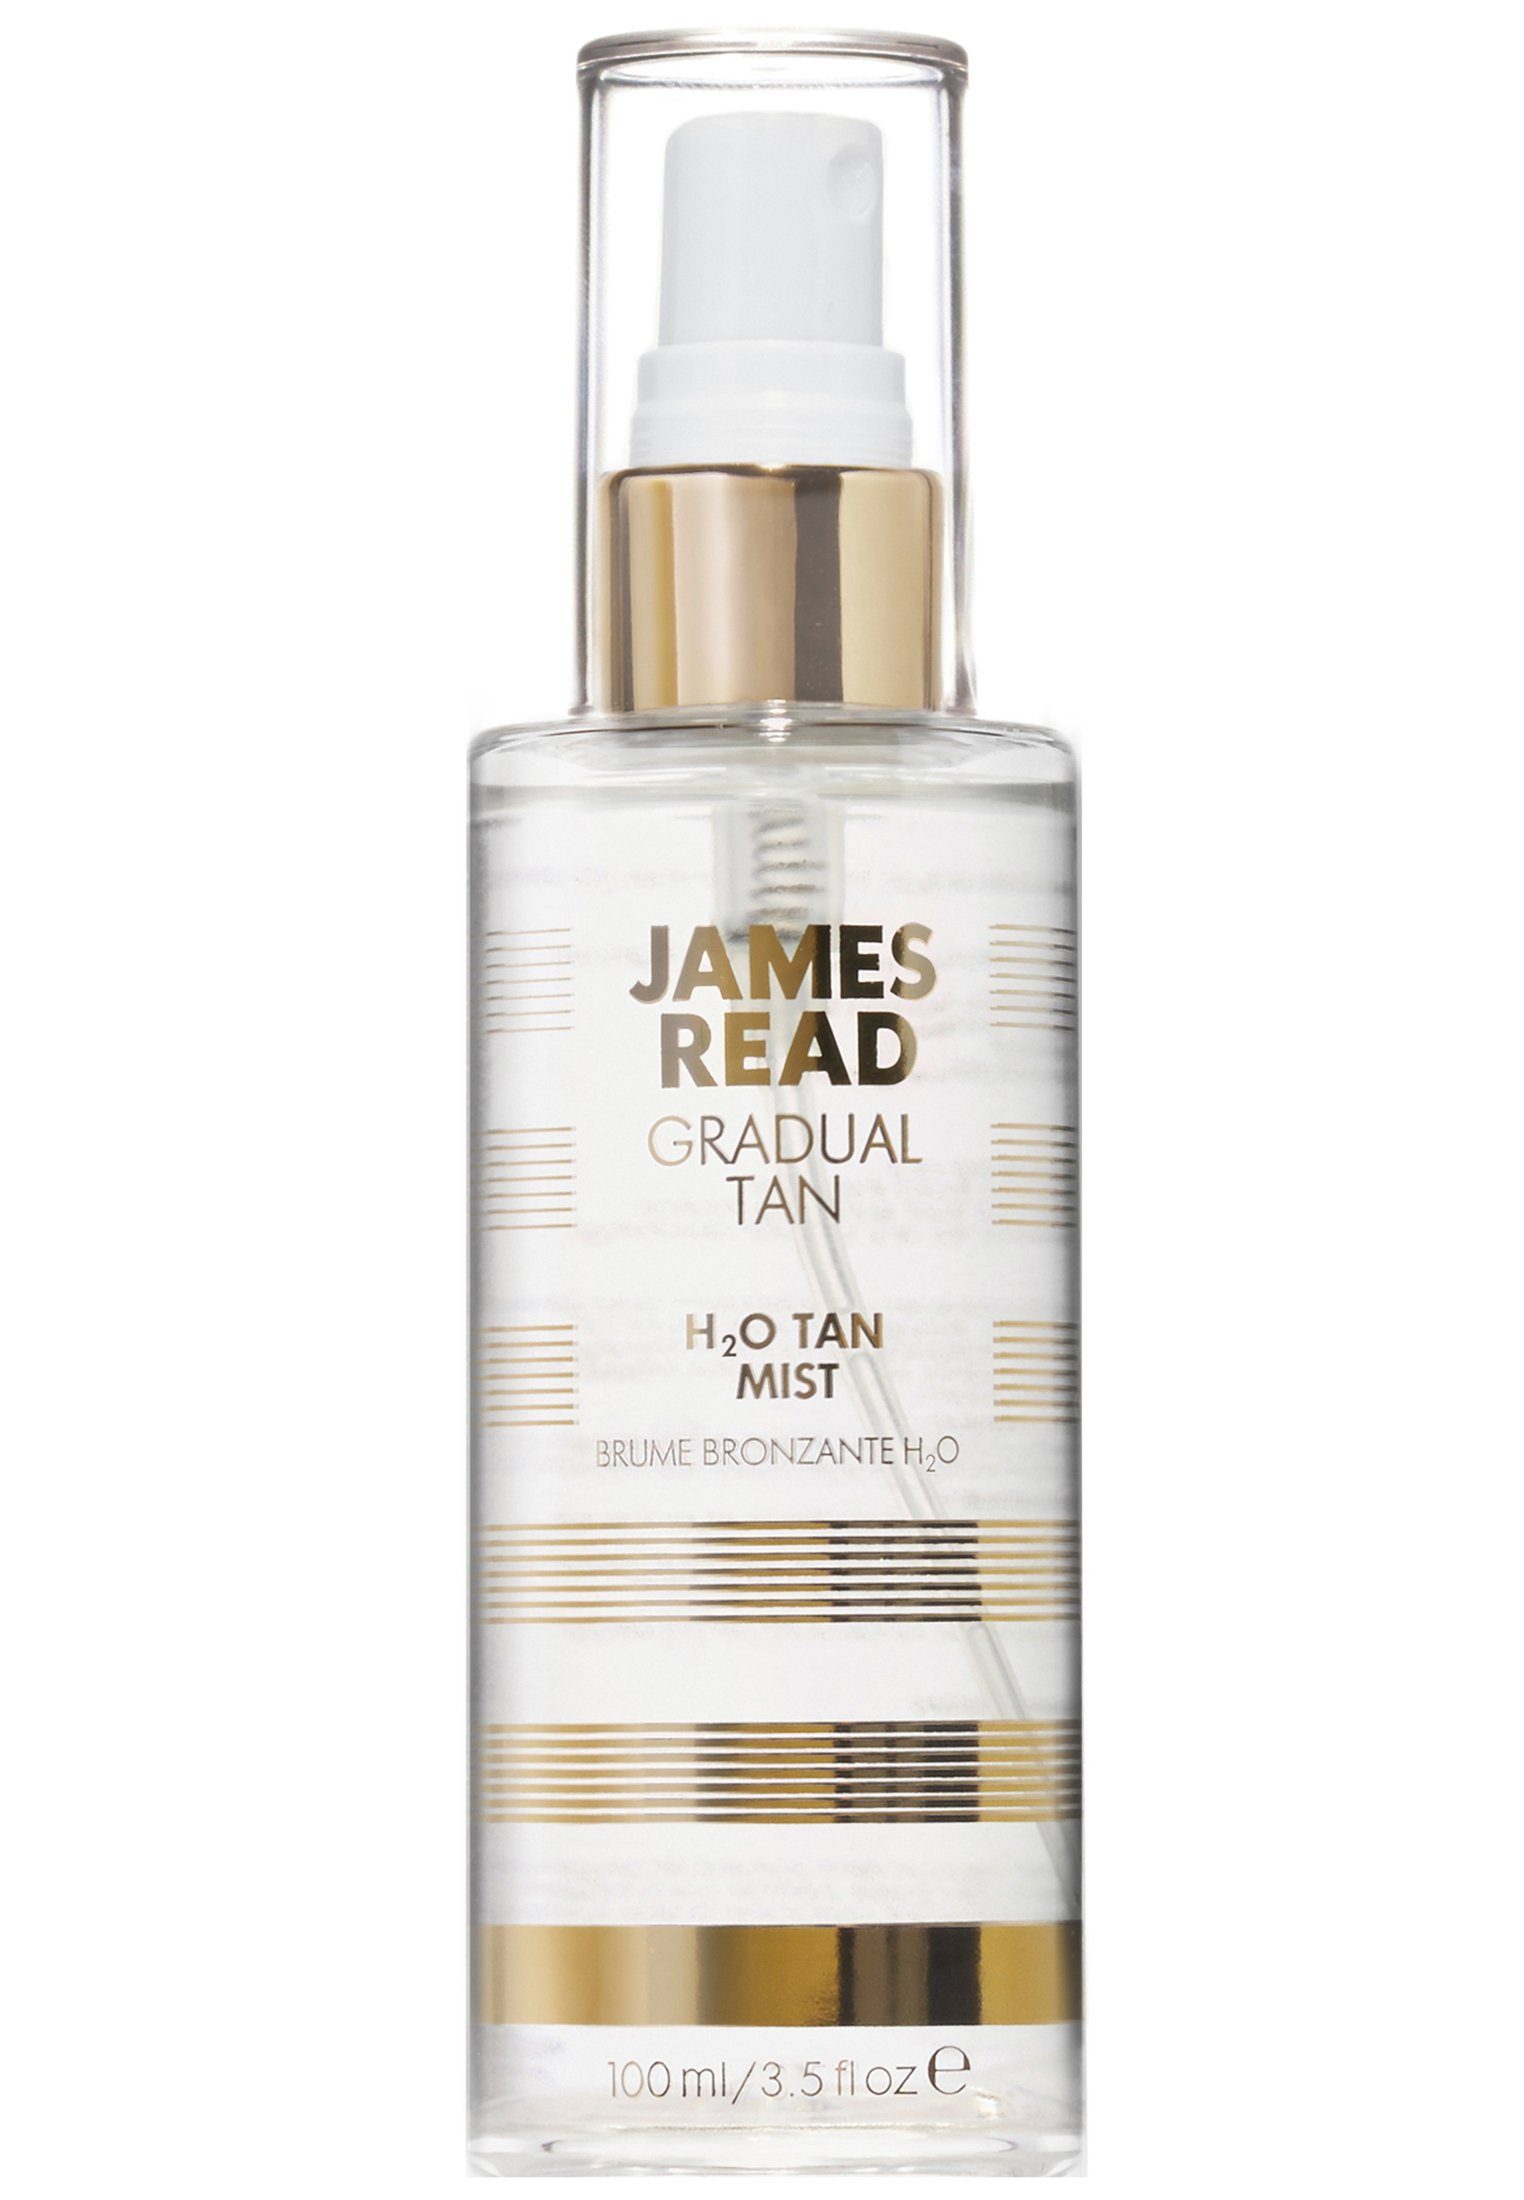 James Gesichtsspray Körperspray Bräunungseffekt! Erfrischendes, James Read Gesichts- pflegendes mit Mist und H2O Read Gesichtsspray Tan